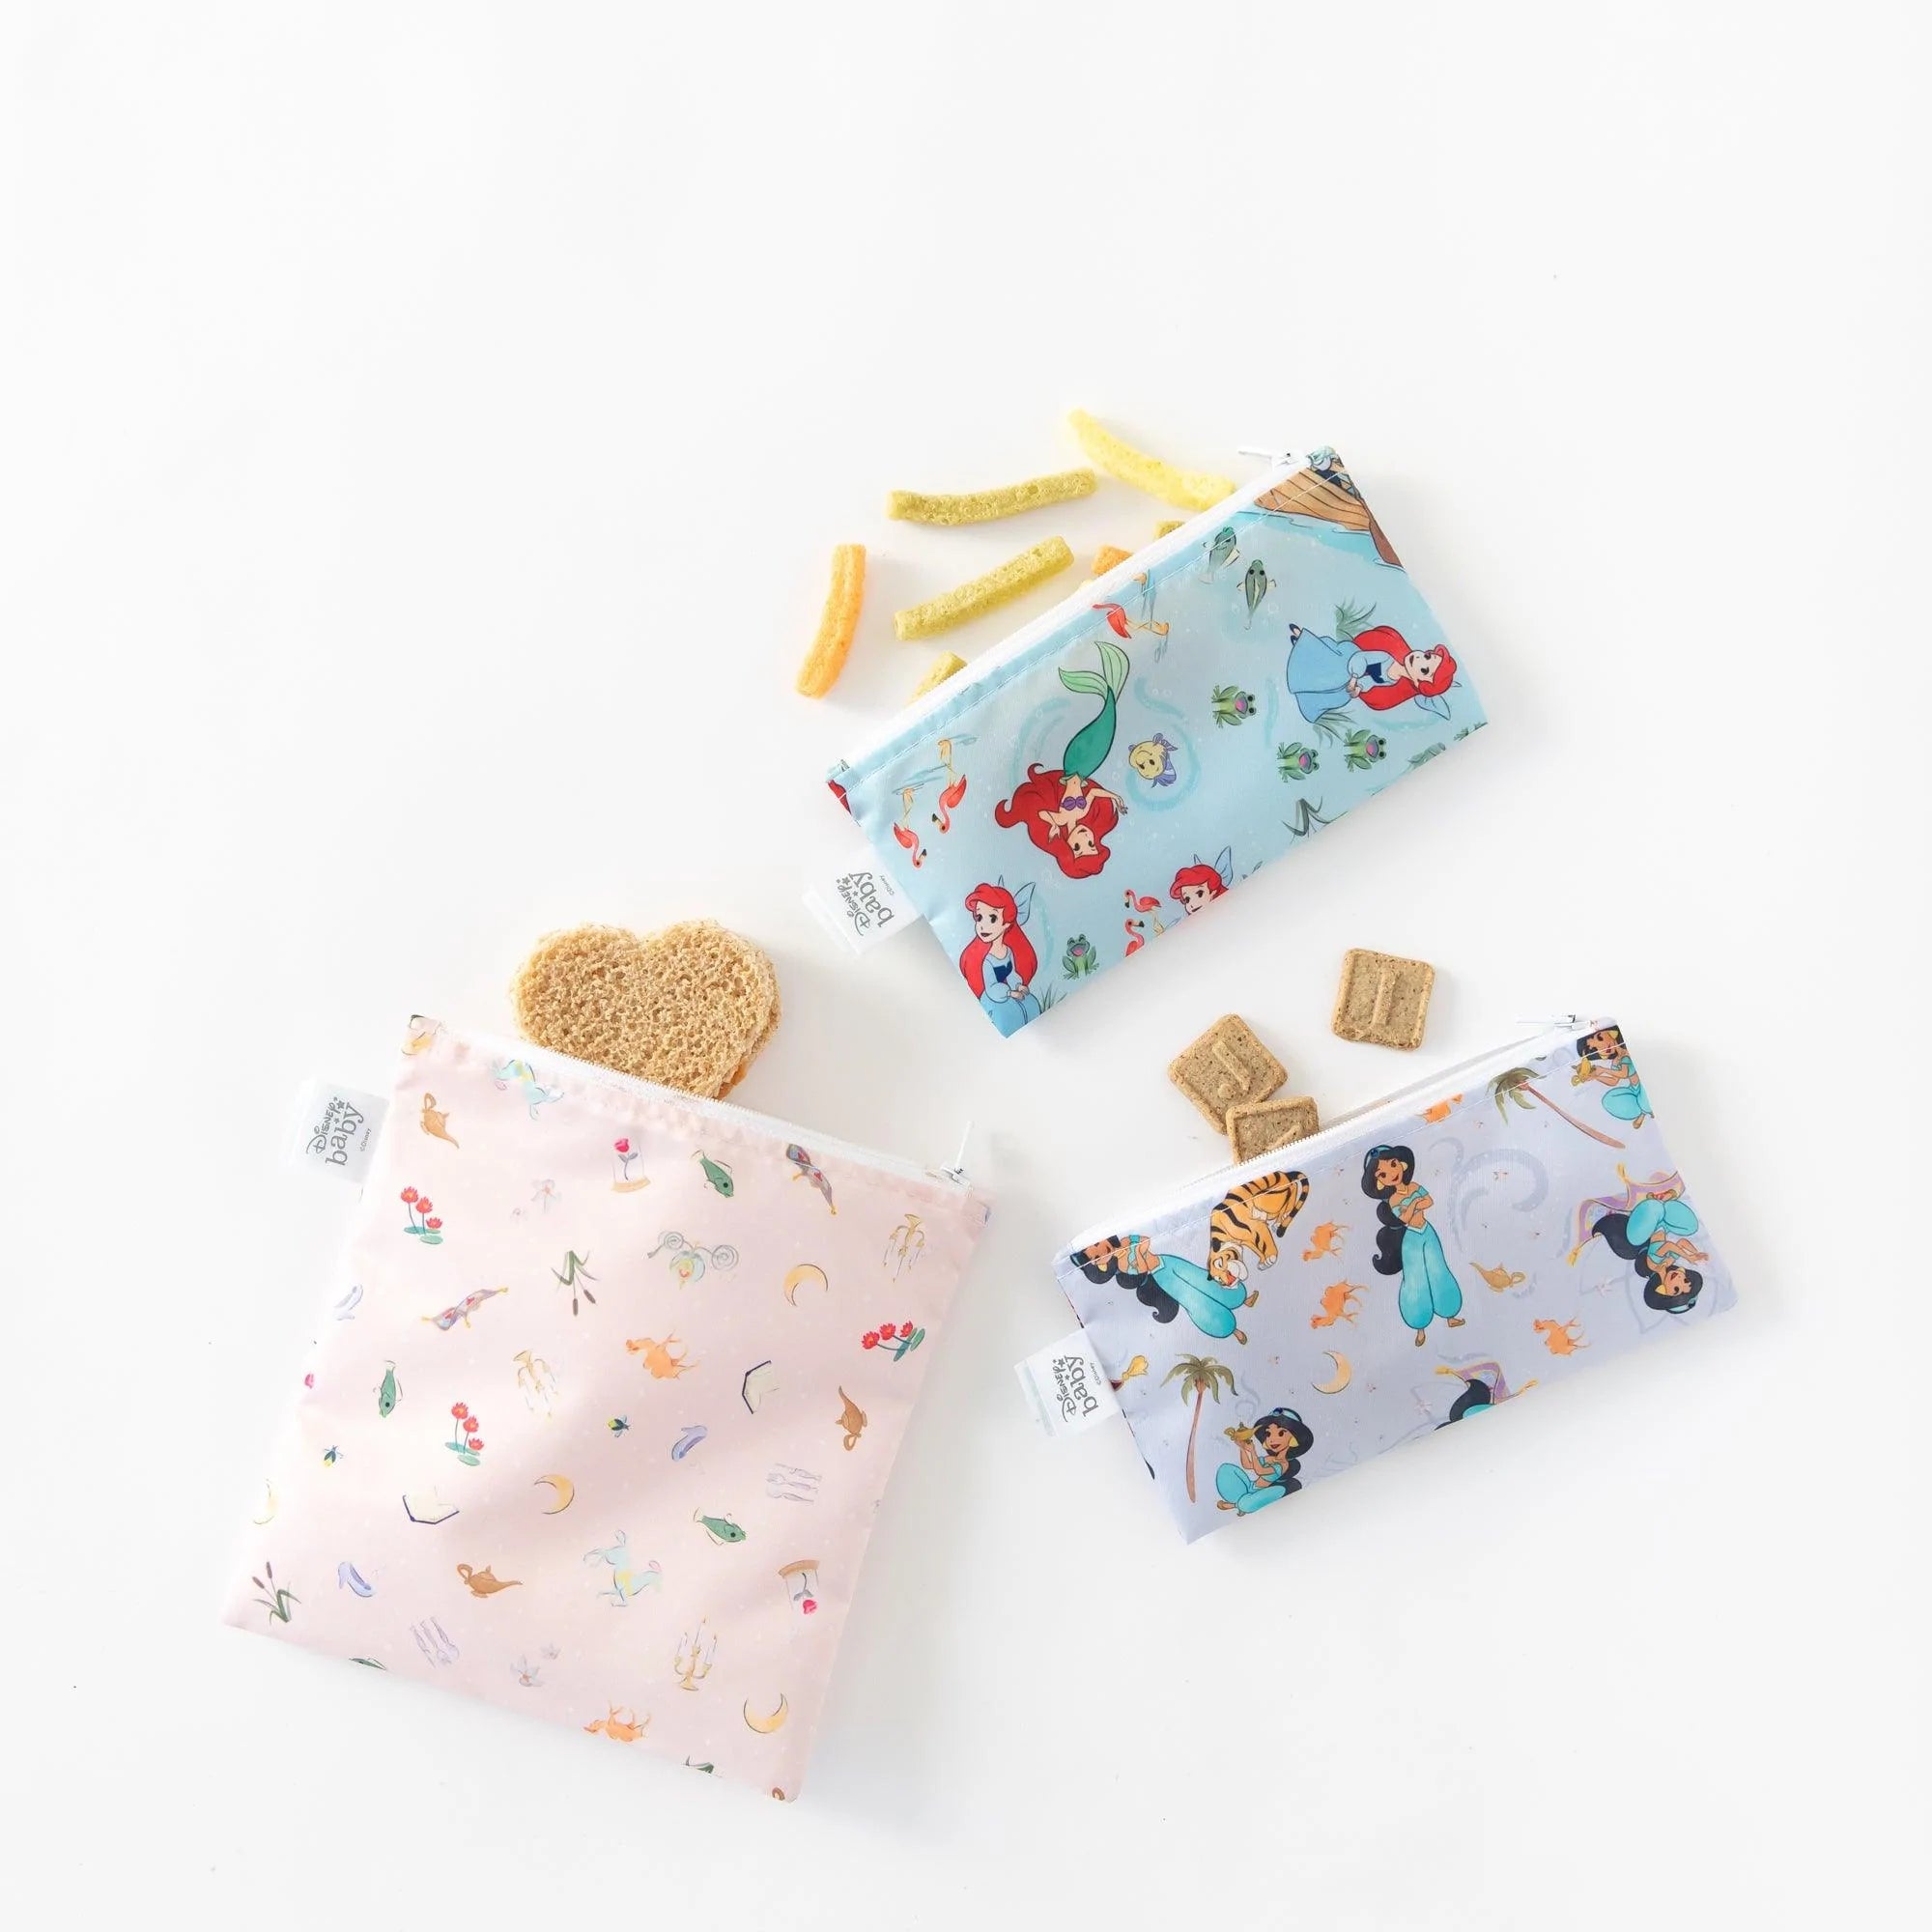 Reusable Snack Bag, 3-Pack: Princess Magic, Ariel, and Jasmine - Bumkins